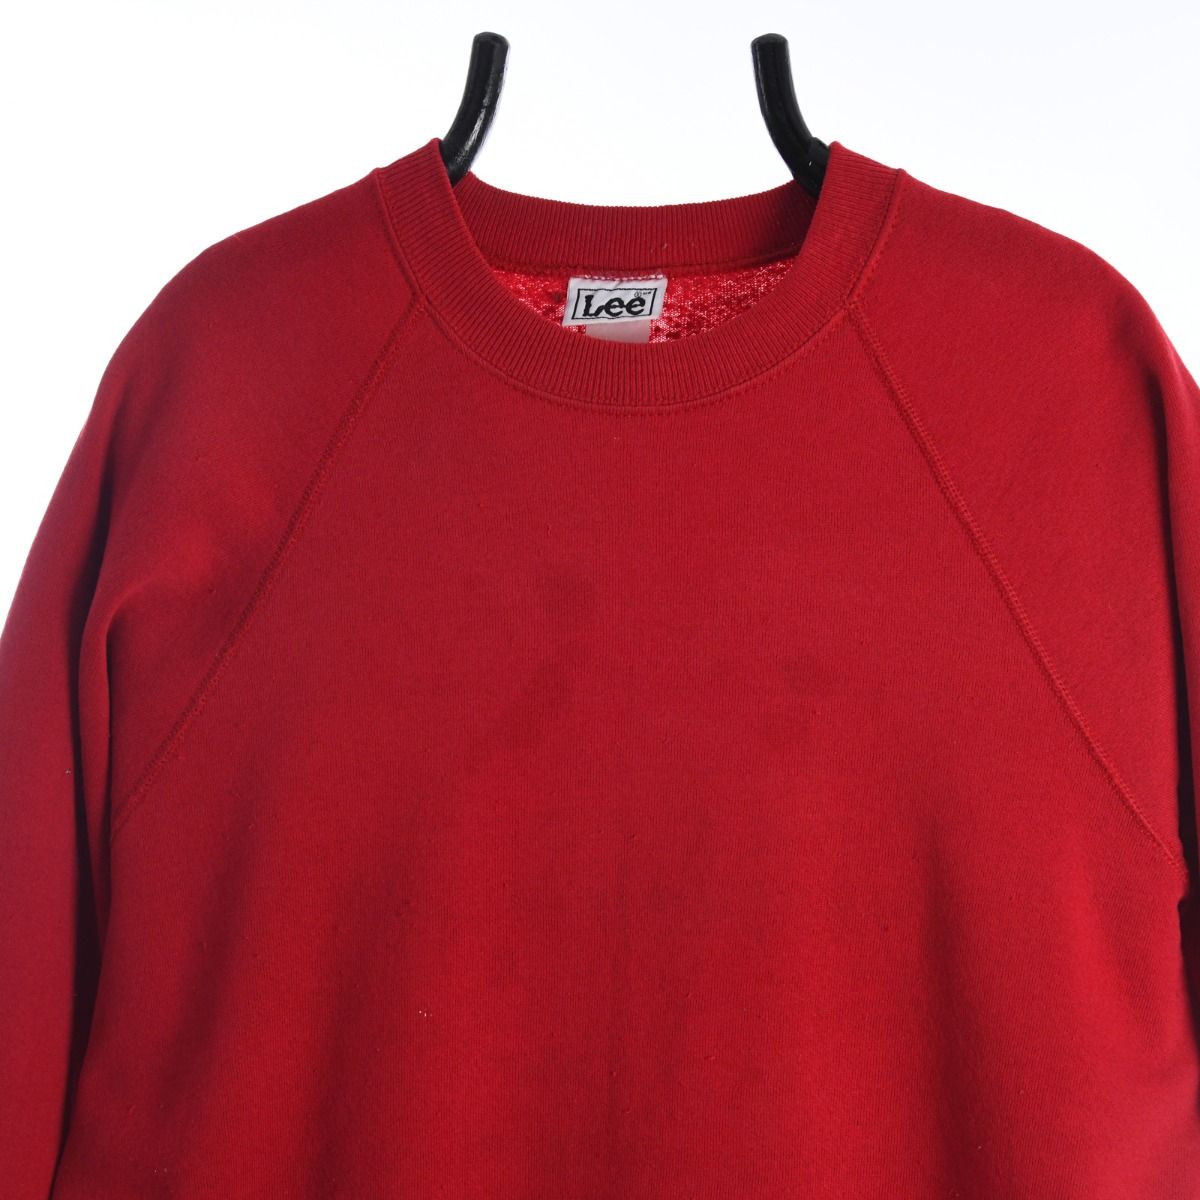 Lee 1990s Blank Red Sweatshirt